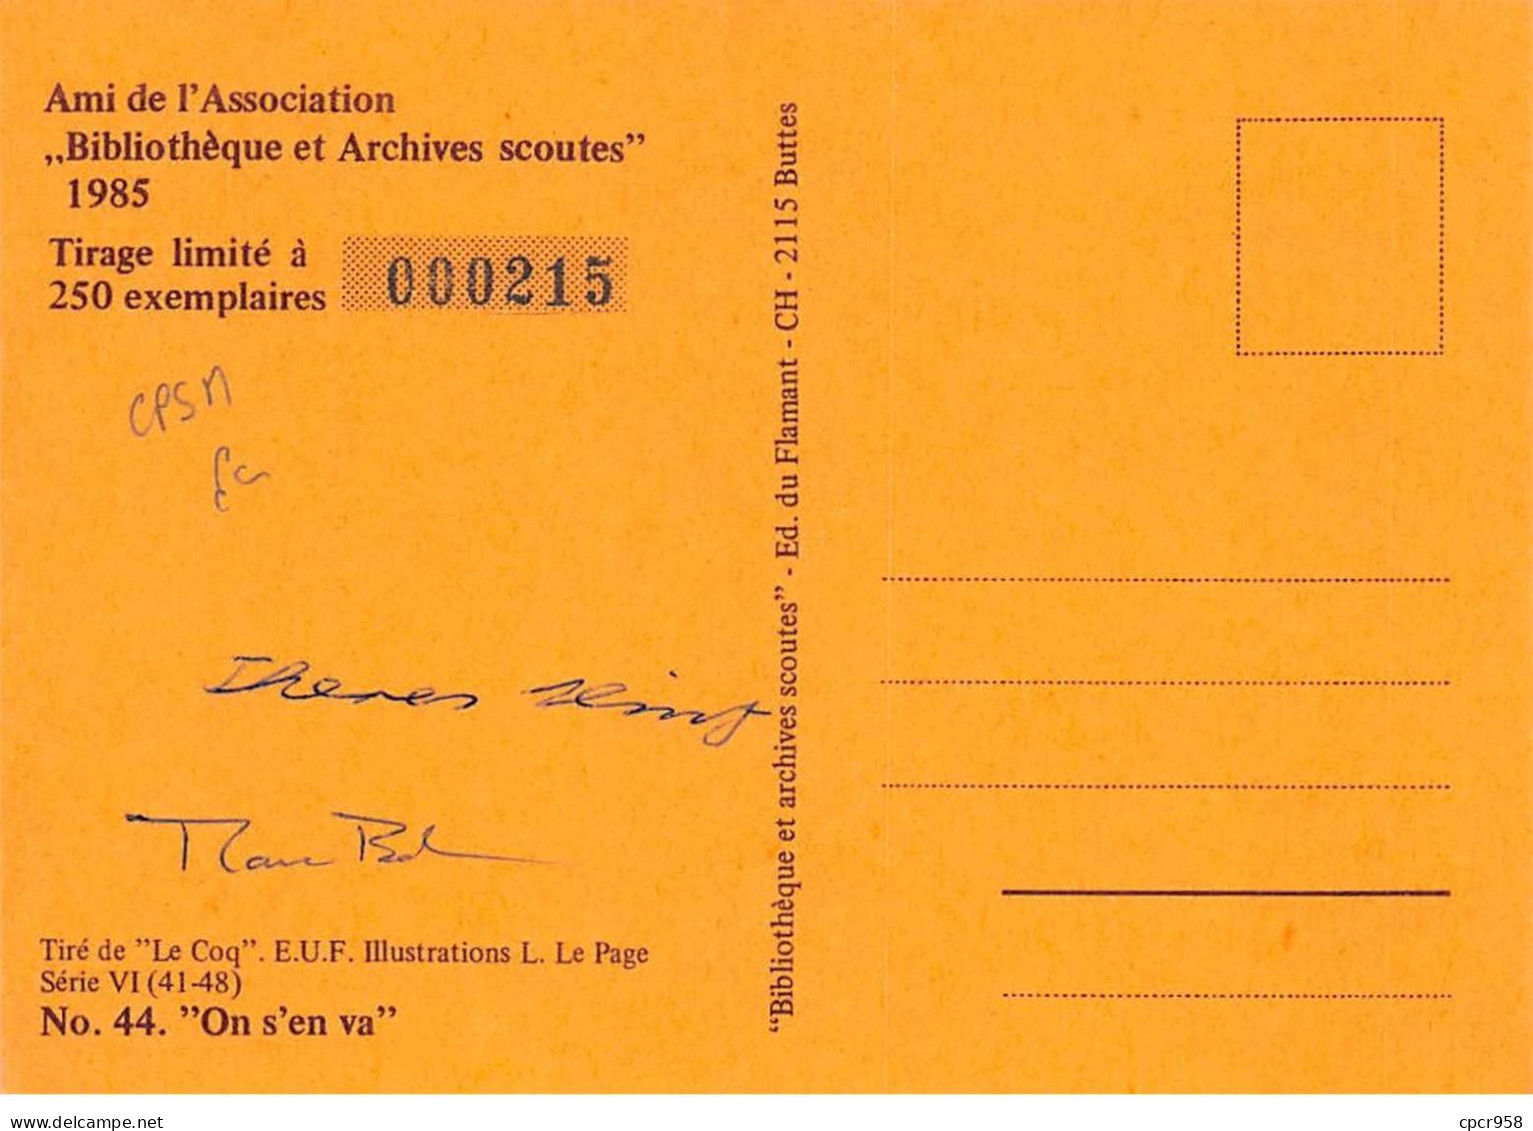 SCOUTISME - SAN36109 - Ami De L'Association Bibliothèque Et Archives Scoutes 1985 - N°44 "On S'en Va" - CPSM 15x10 Cm - Scoutisme